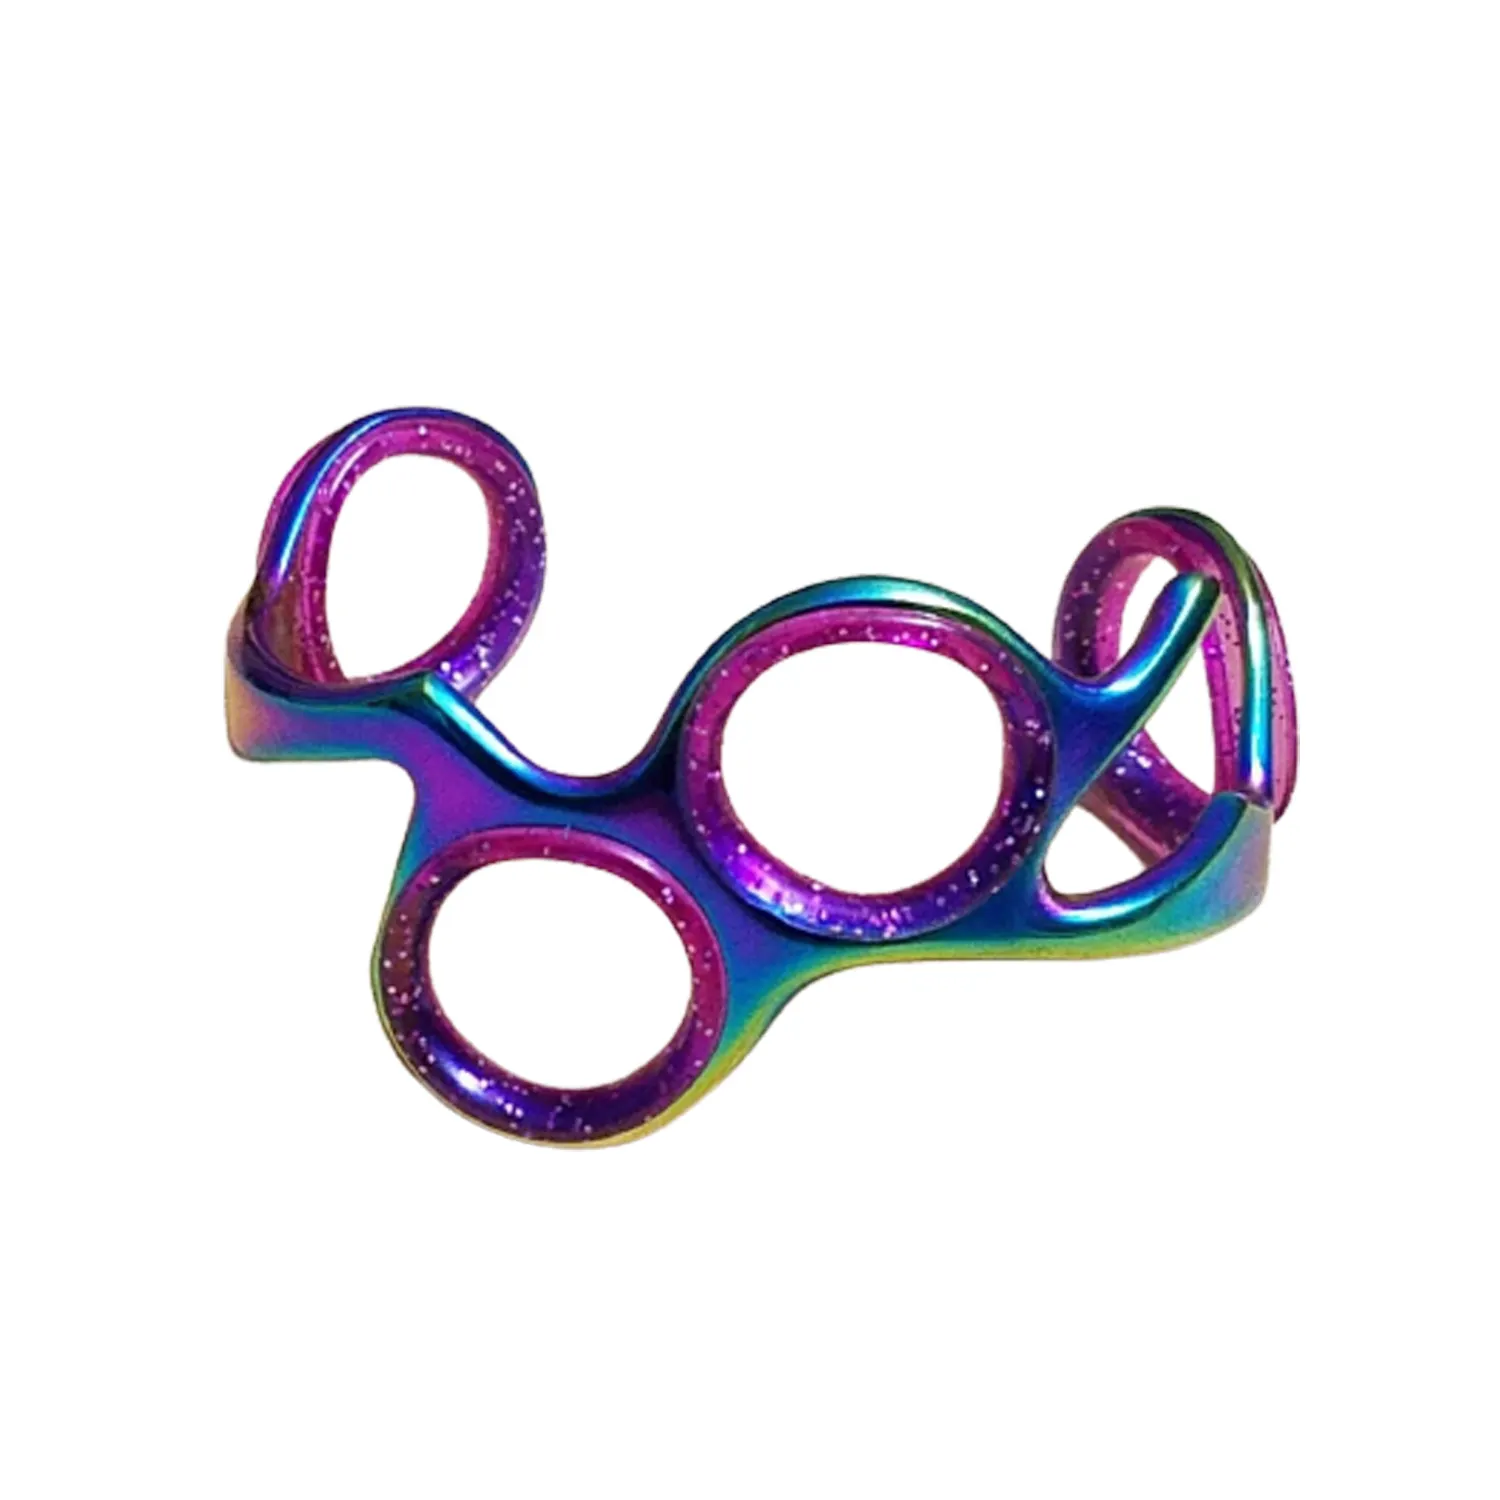 Anillo Unisex para peluquería, pulsera de peluquero de Color arcoíris, fácil de llevar en la muñeca o en la parte superior del antebrazo